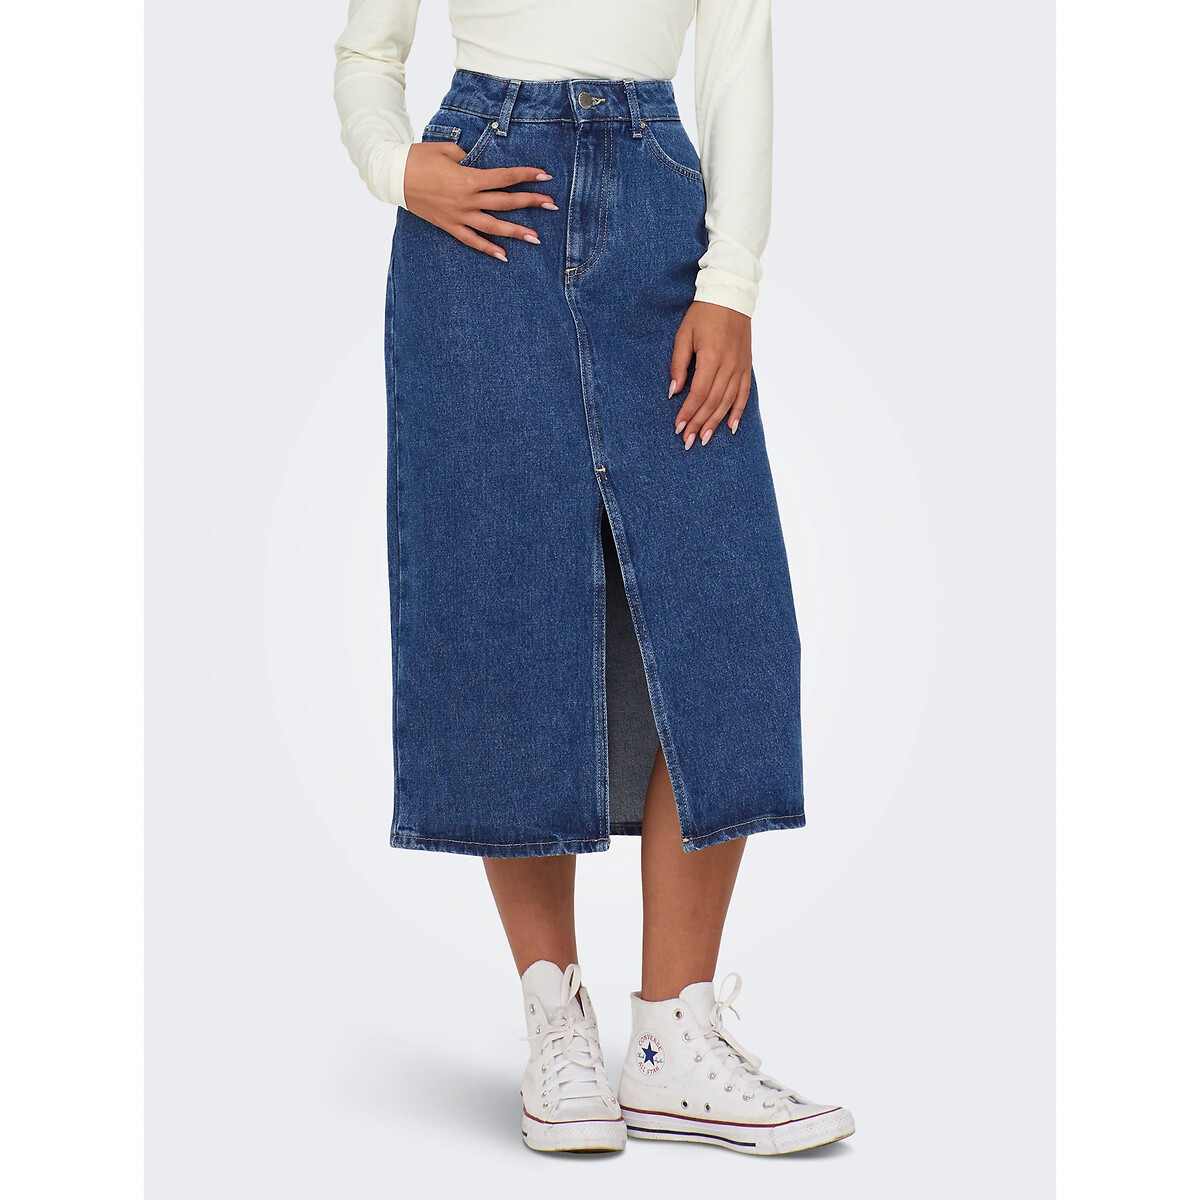 Юбка-миди из джинсовой ткани XL синий юбка из джинсовой ткани l синий